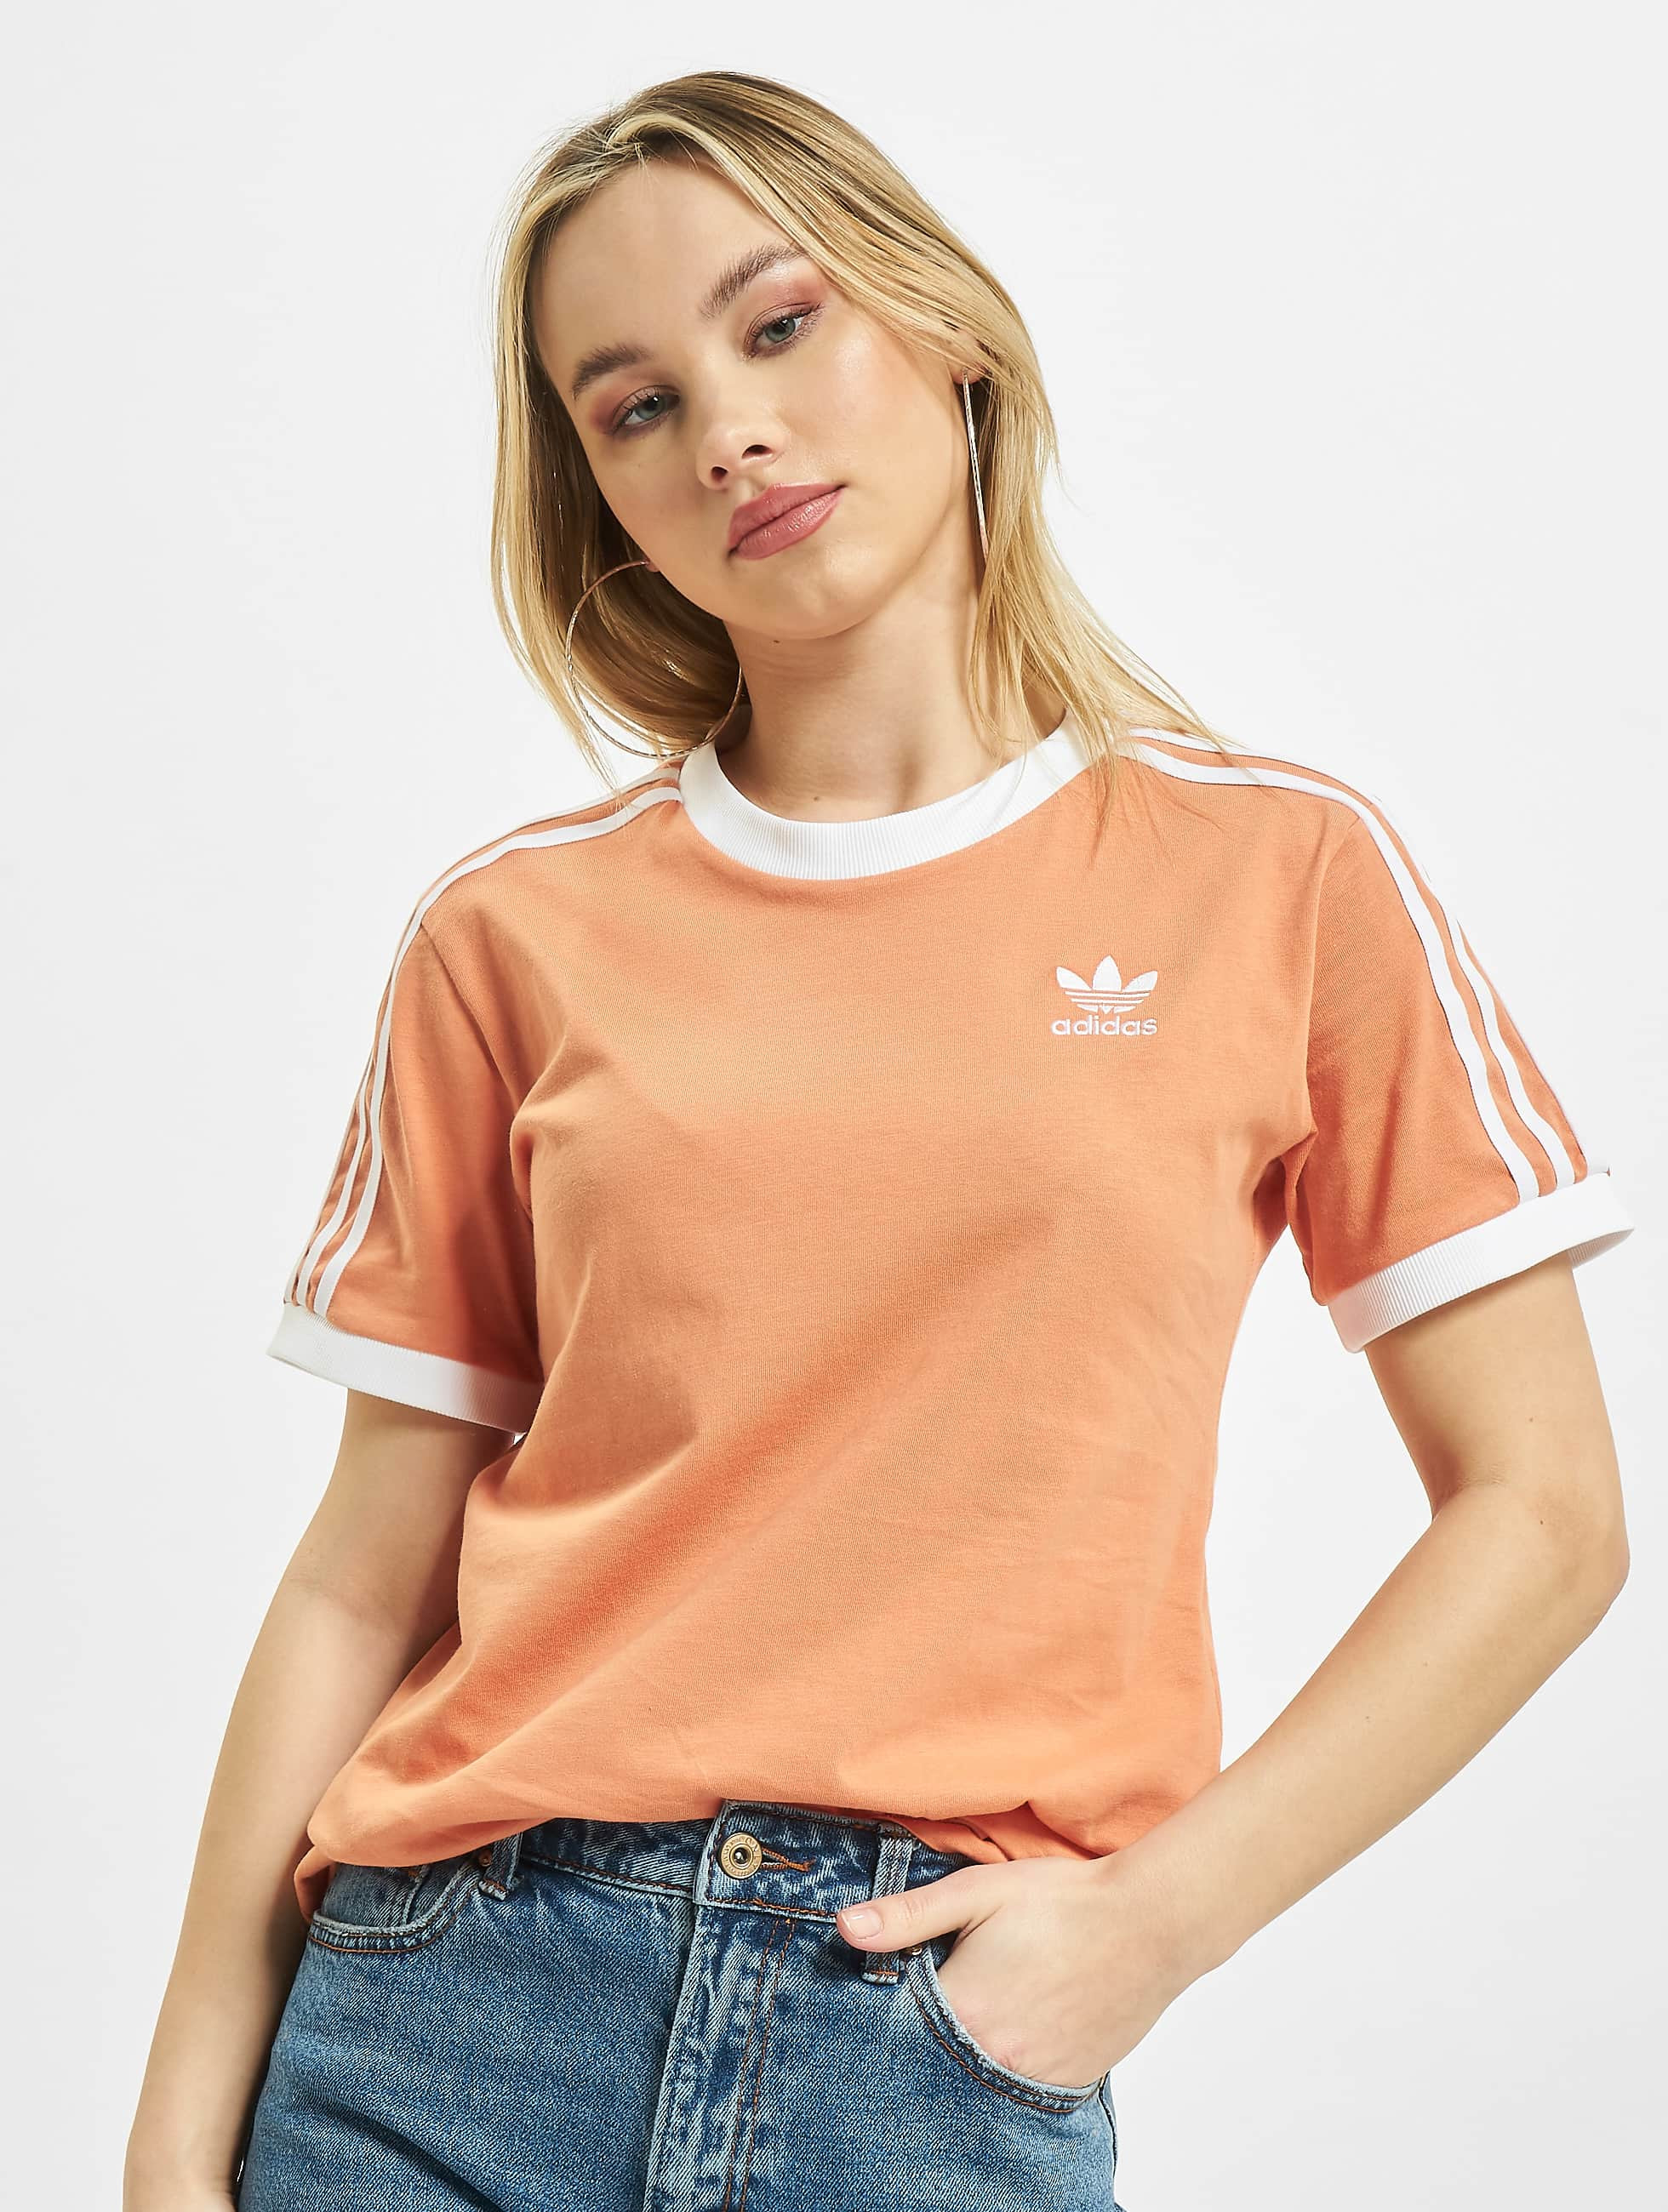 Bijwerken geestelijke gezondheid Electrificeren adidas Originals bovenstuk / t-shirt 3 Stripes in oranje 813970